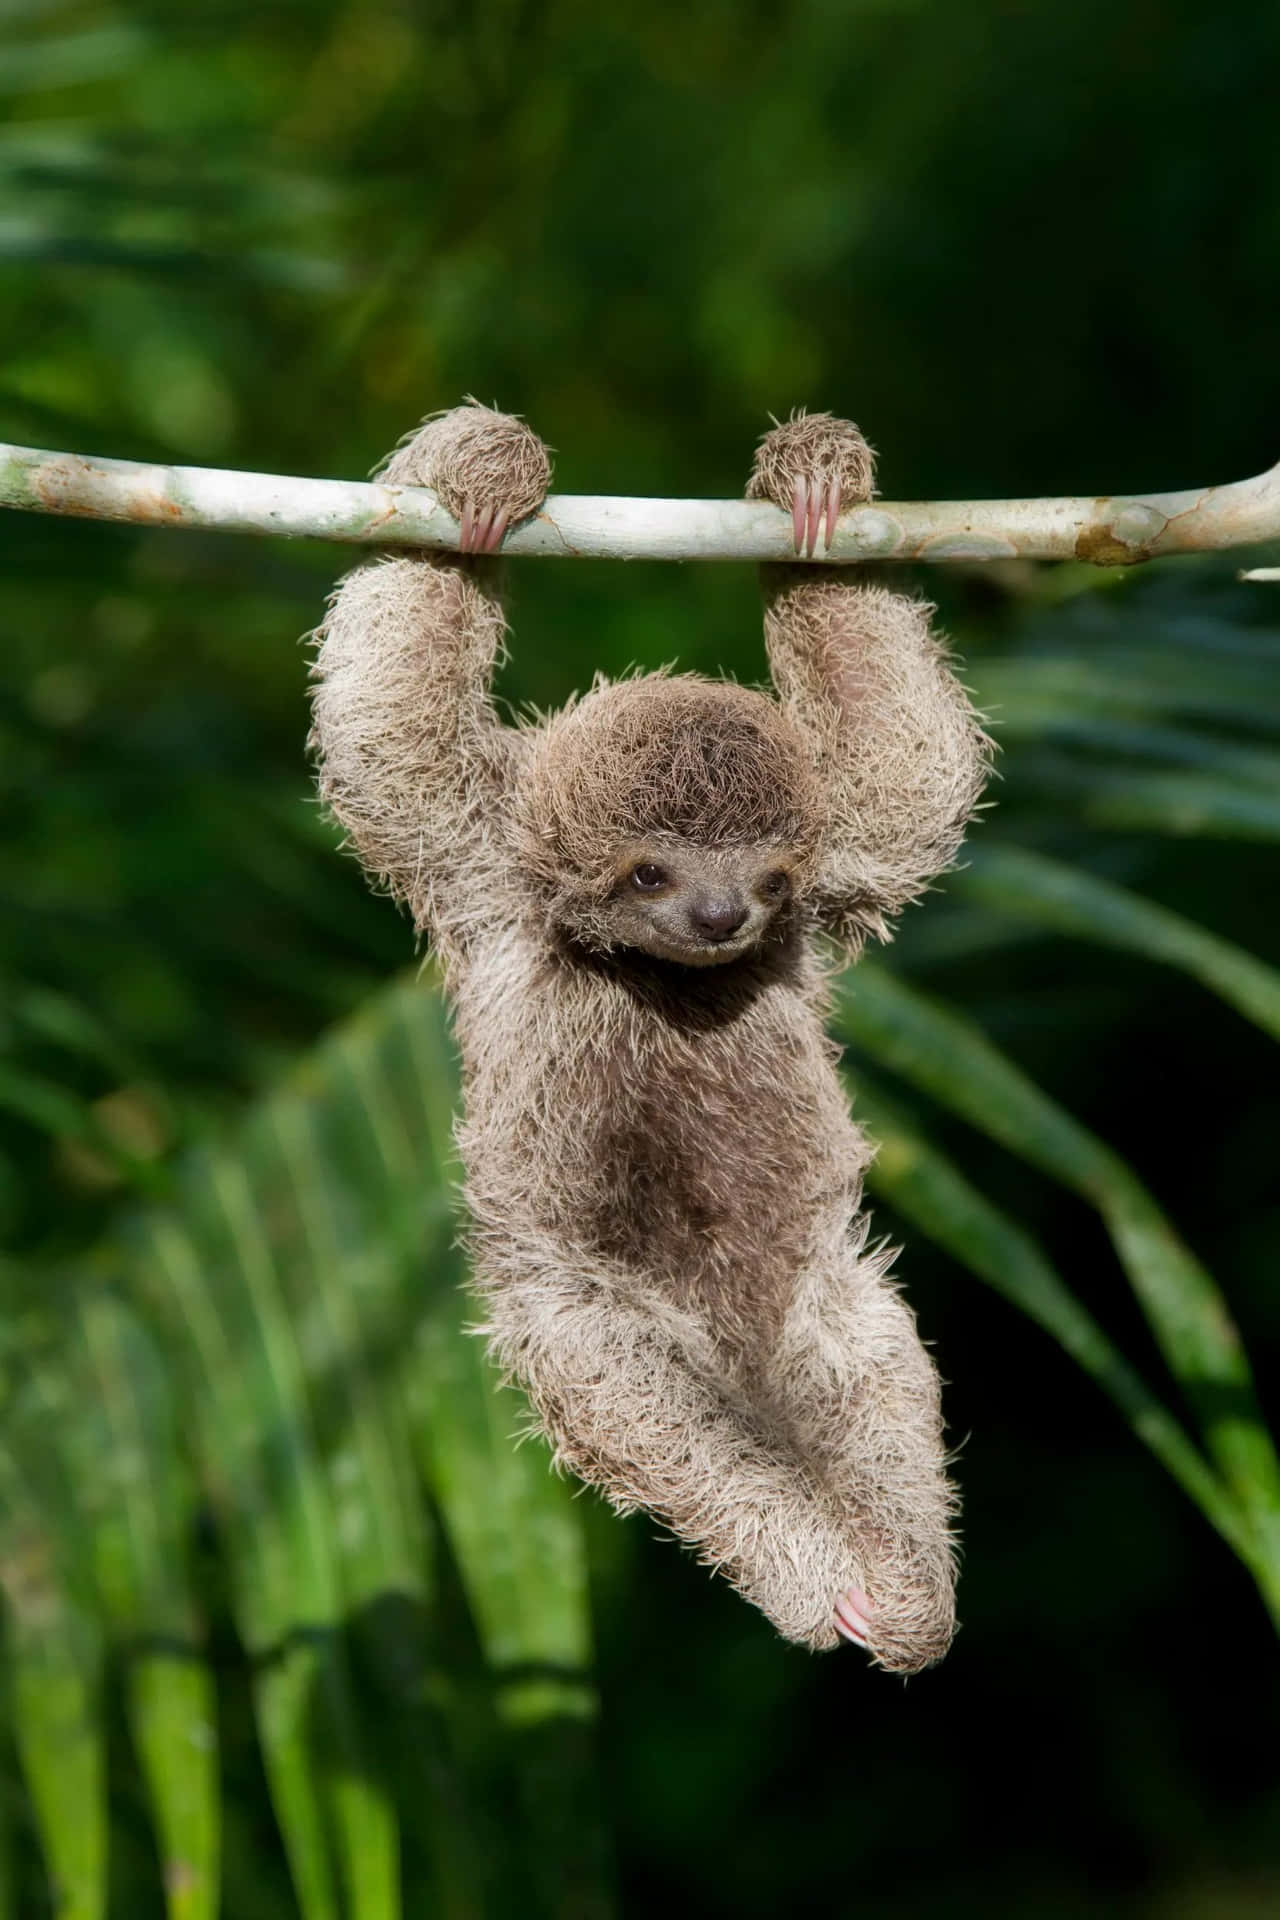 Adorable Baby Sloth Enjoying A Nap In Its Natural Habitat